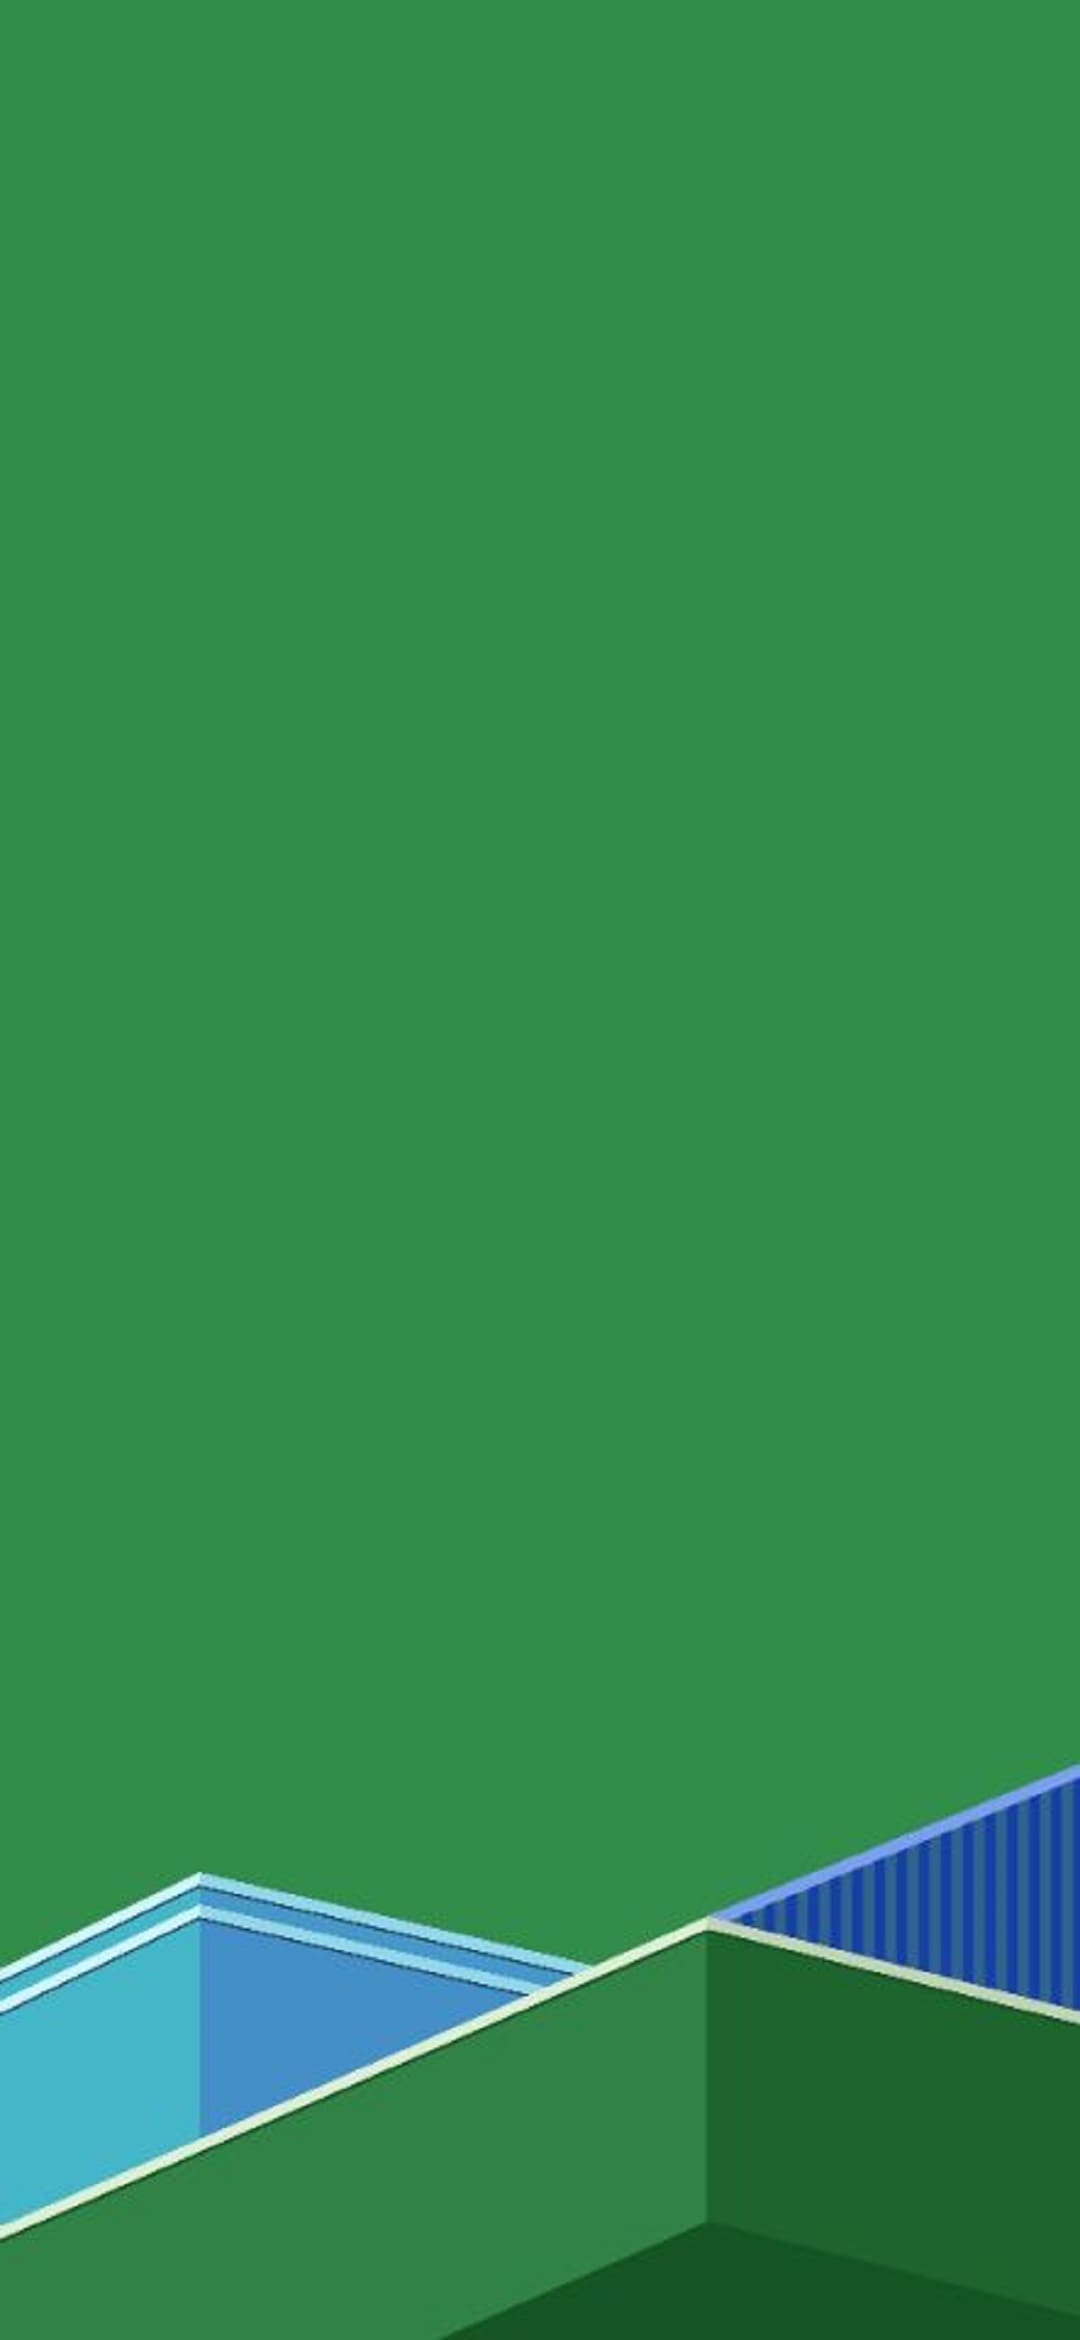 oppo r9s 벽지,초록,푸른,라켓 스포츠,낮,잎